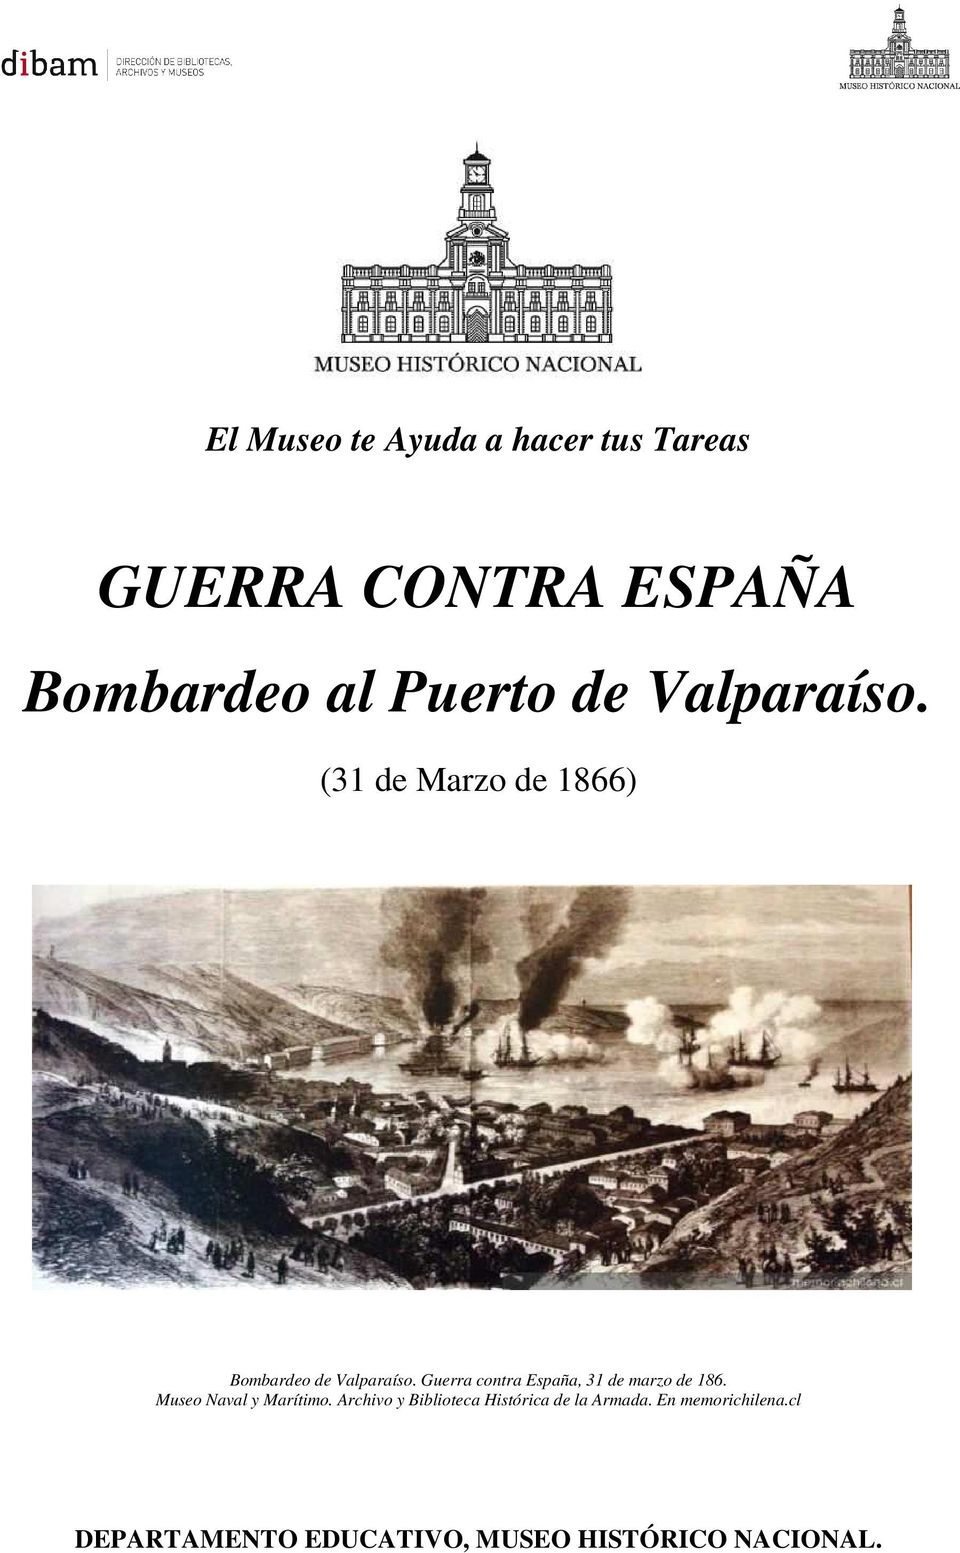 (31 de Marzo de 1866) Bombardeo de Valparaíso.